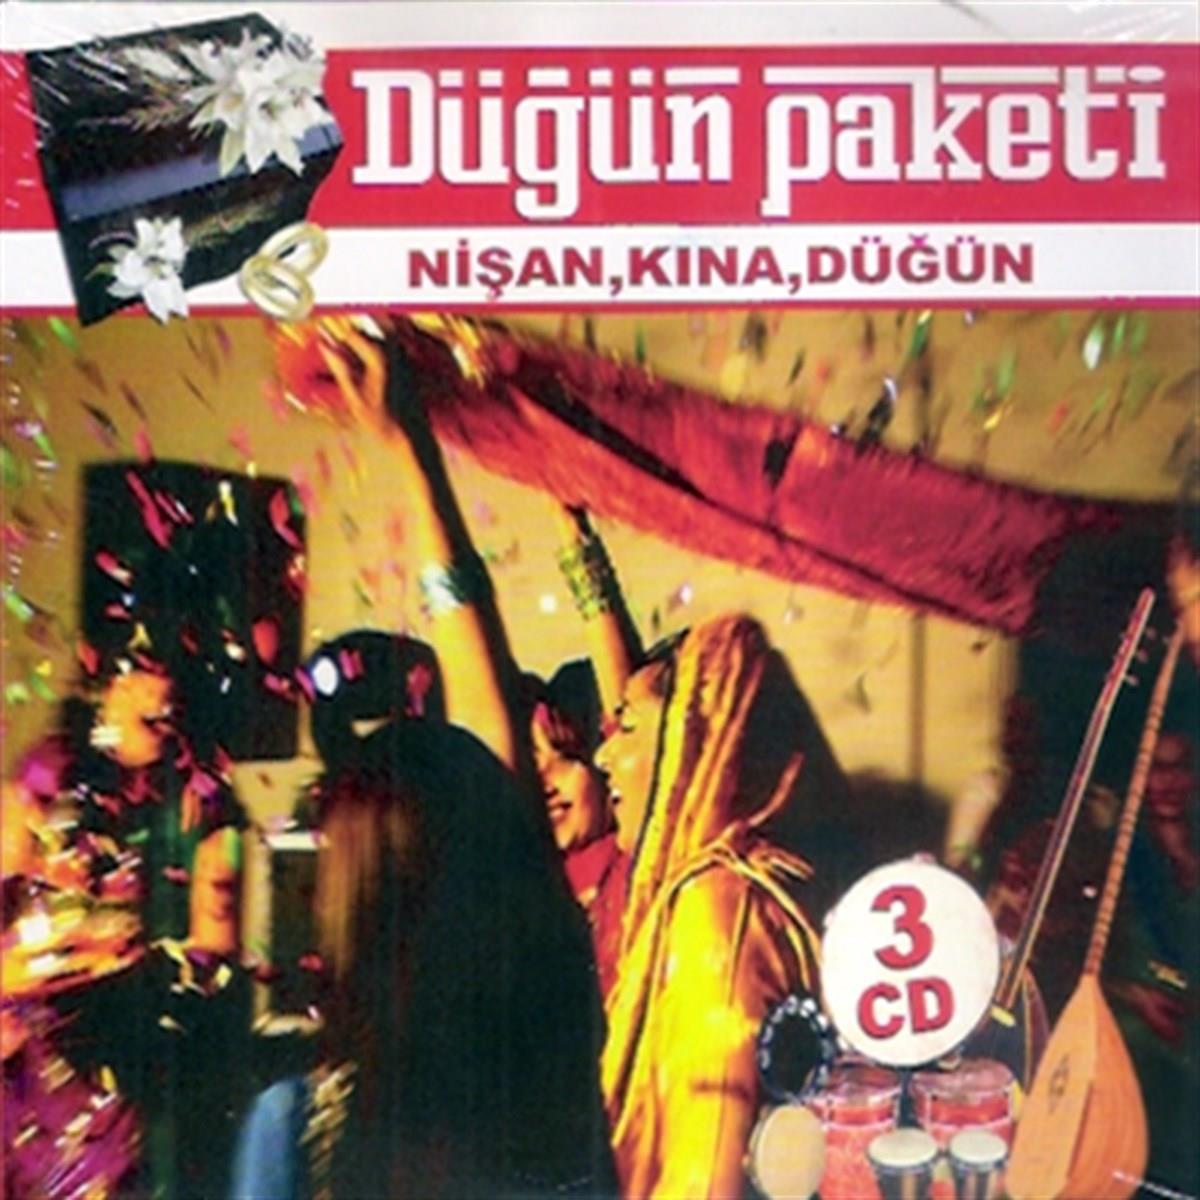 Düğün Paketi - Nişan - Kına - Düğün (CD) | esenshop - Plak, LP, CD, DVD